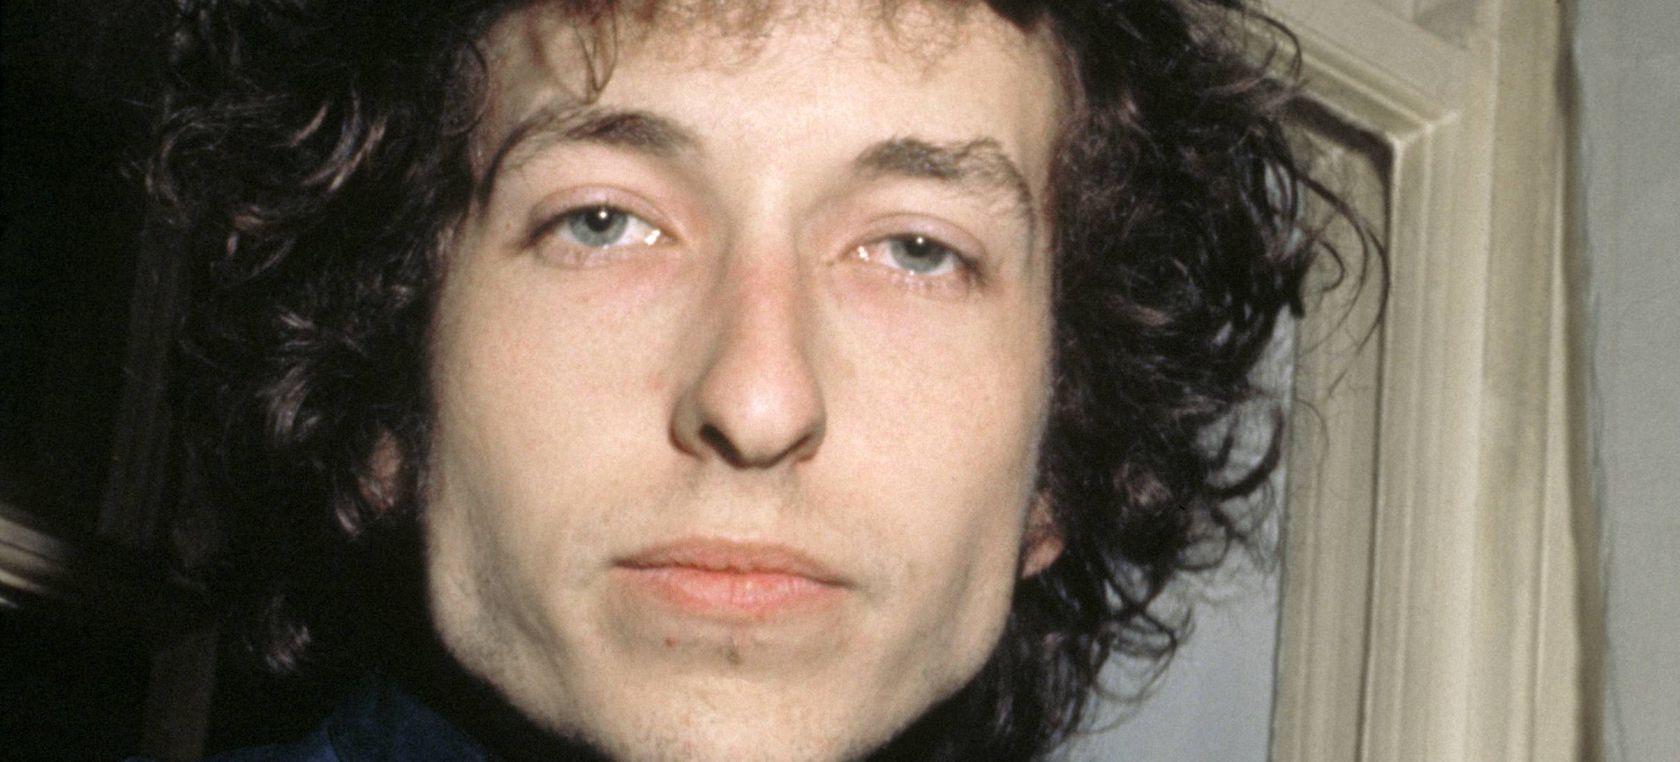 Bob Dylan se enfrenta a una dura acusación por abusos a una niña que podría destruir su imagen